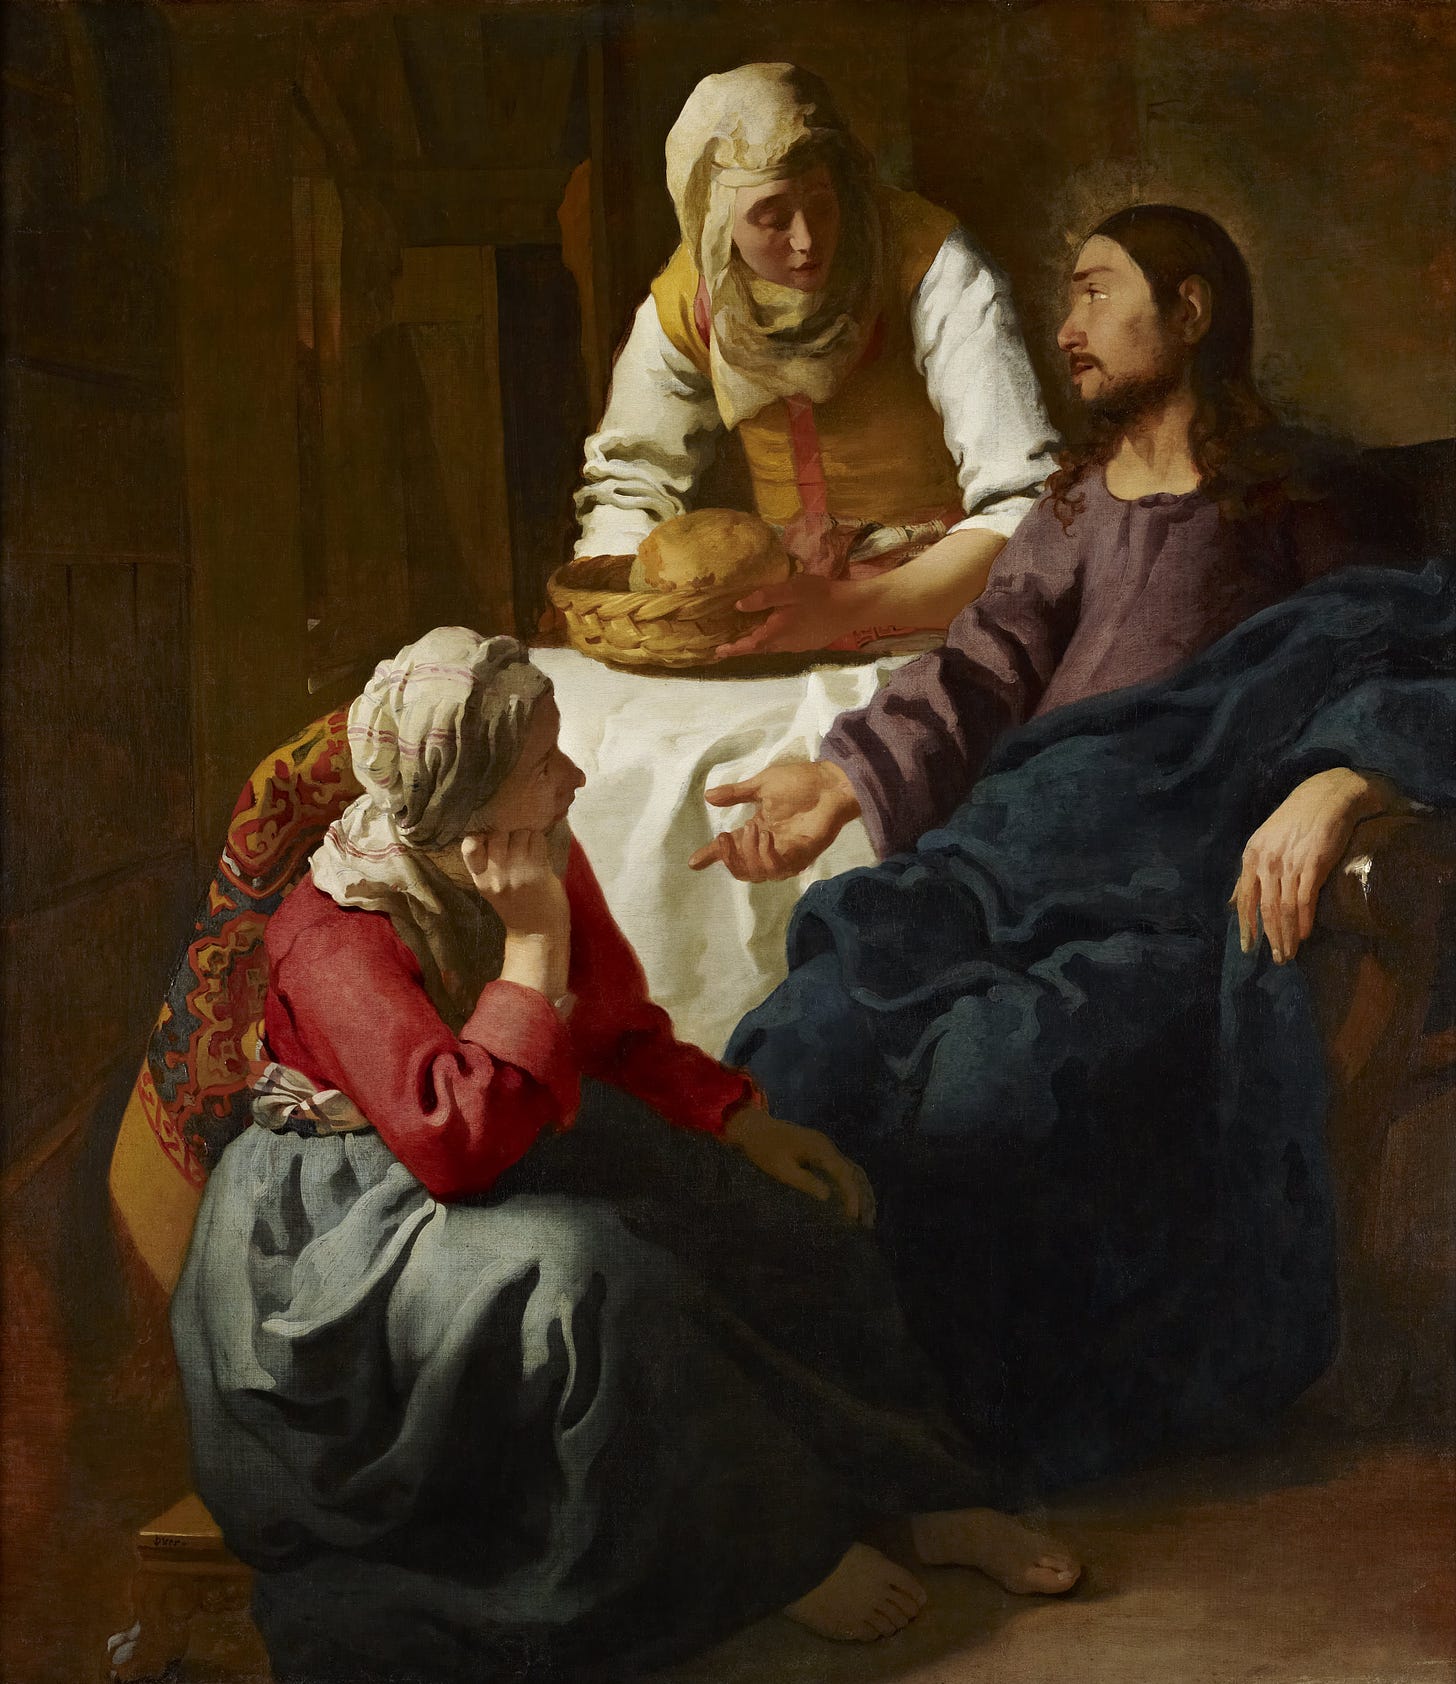 Mary of Bethany - Wikipedia